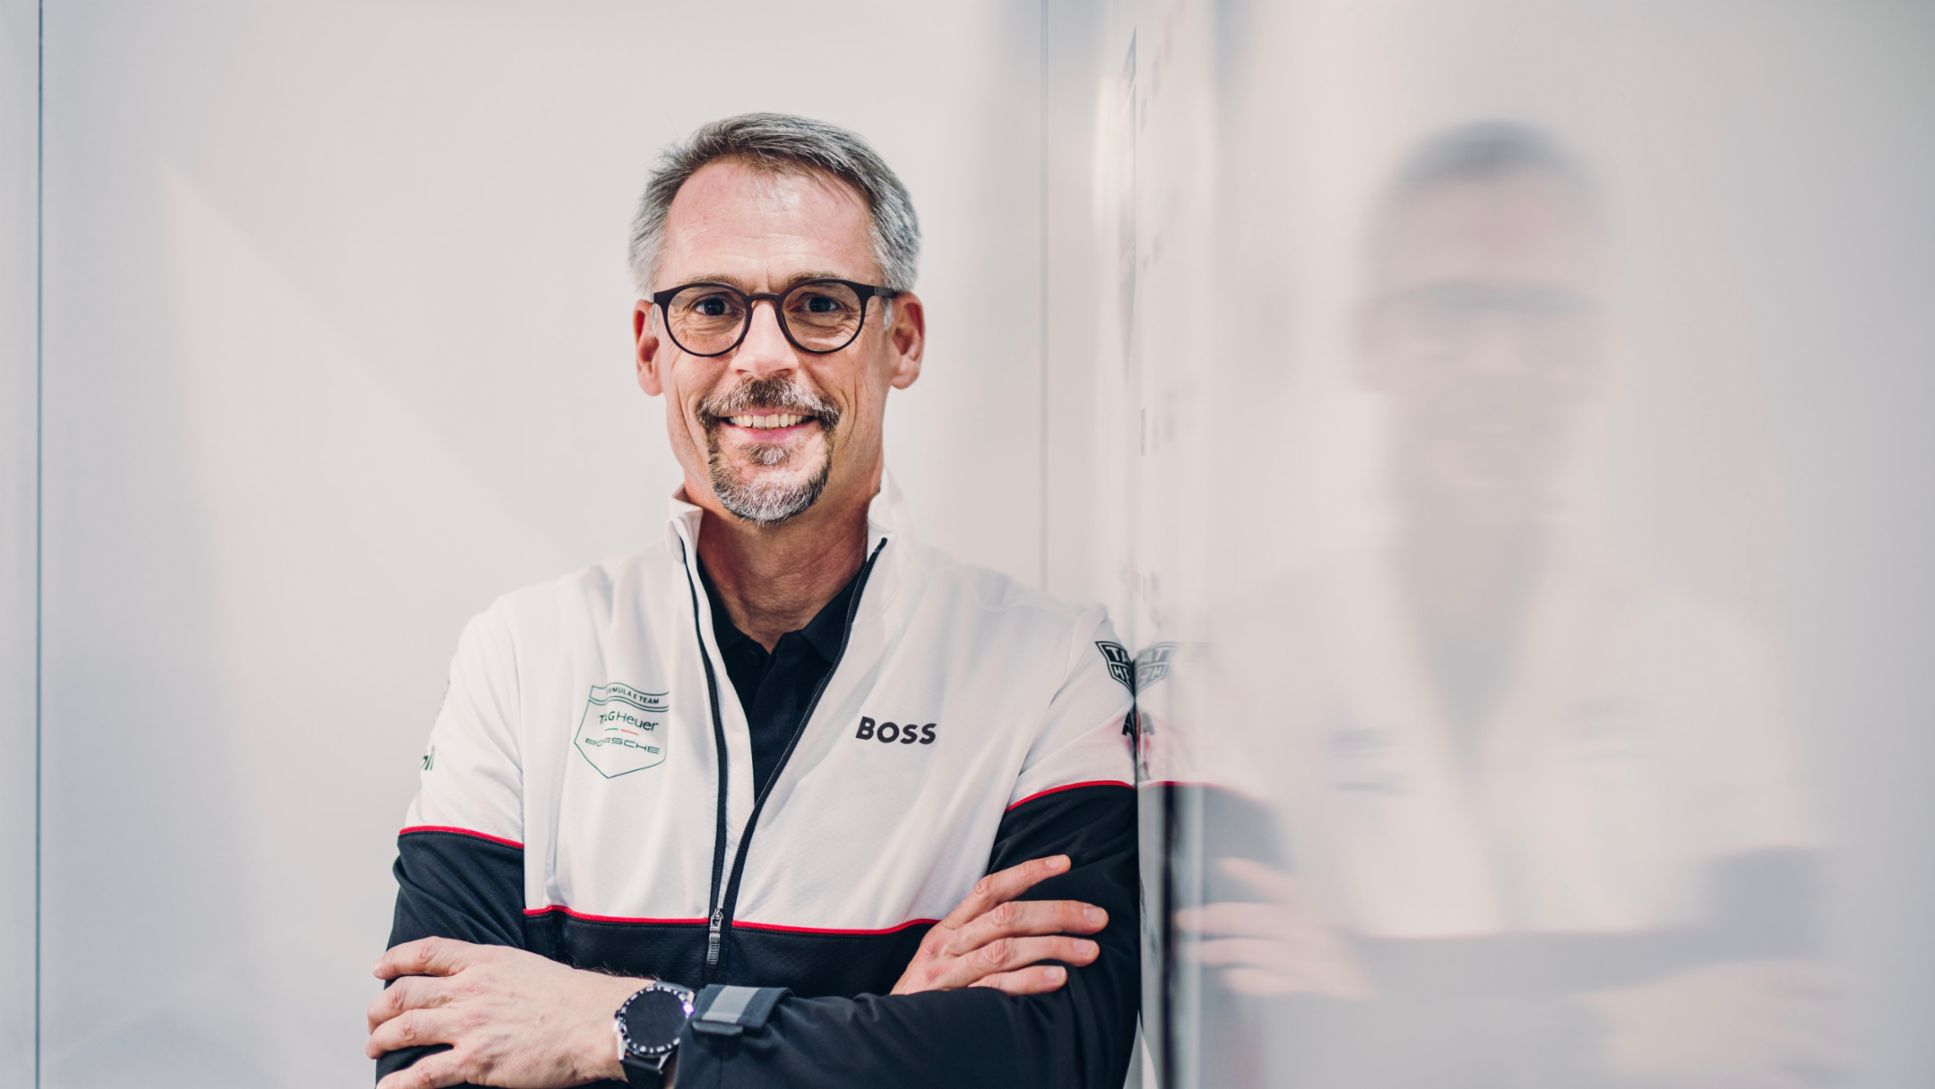 Thomas Laudenbach, new Vice President Porsche Motorsport, 2021, Porsche AG